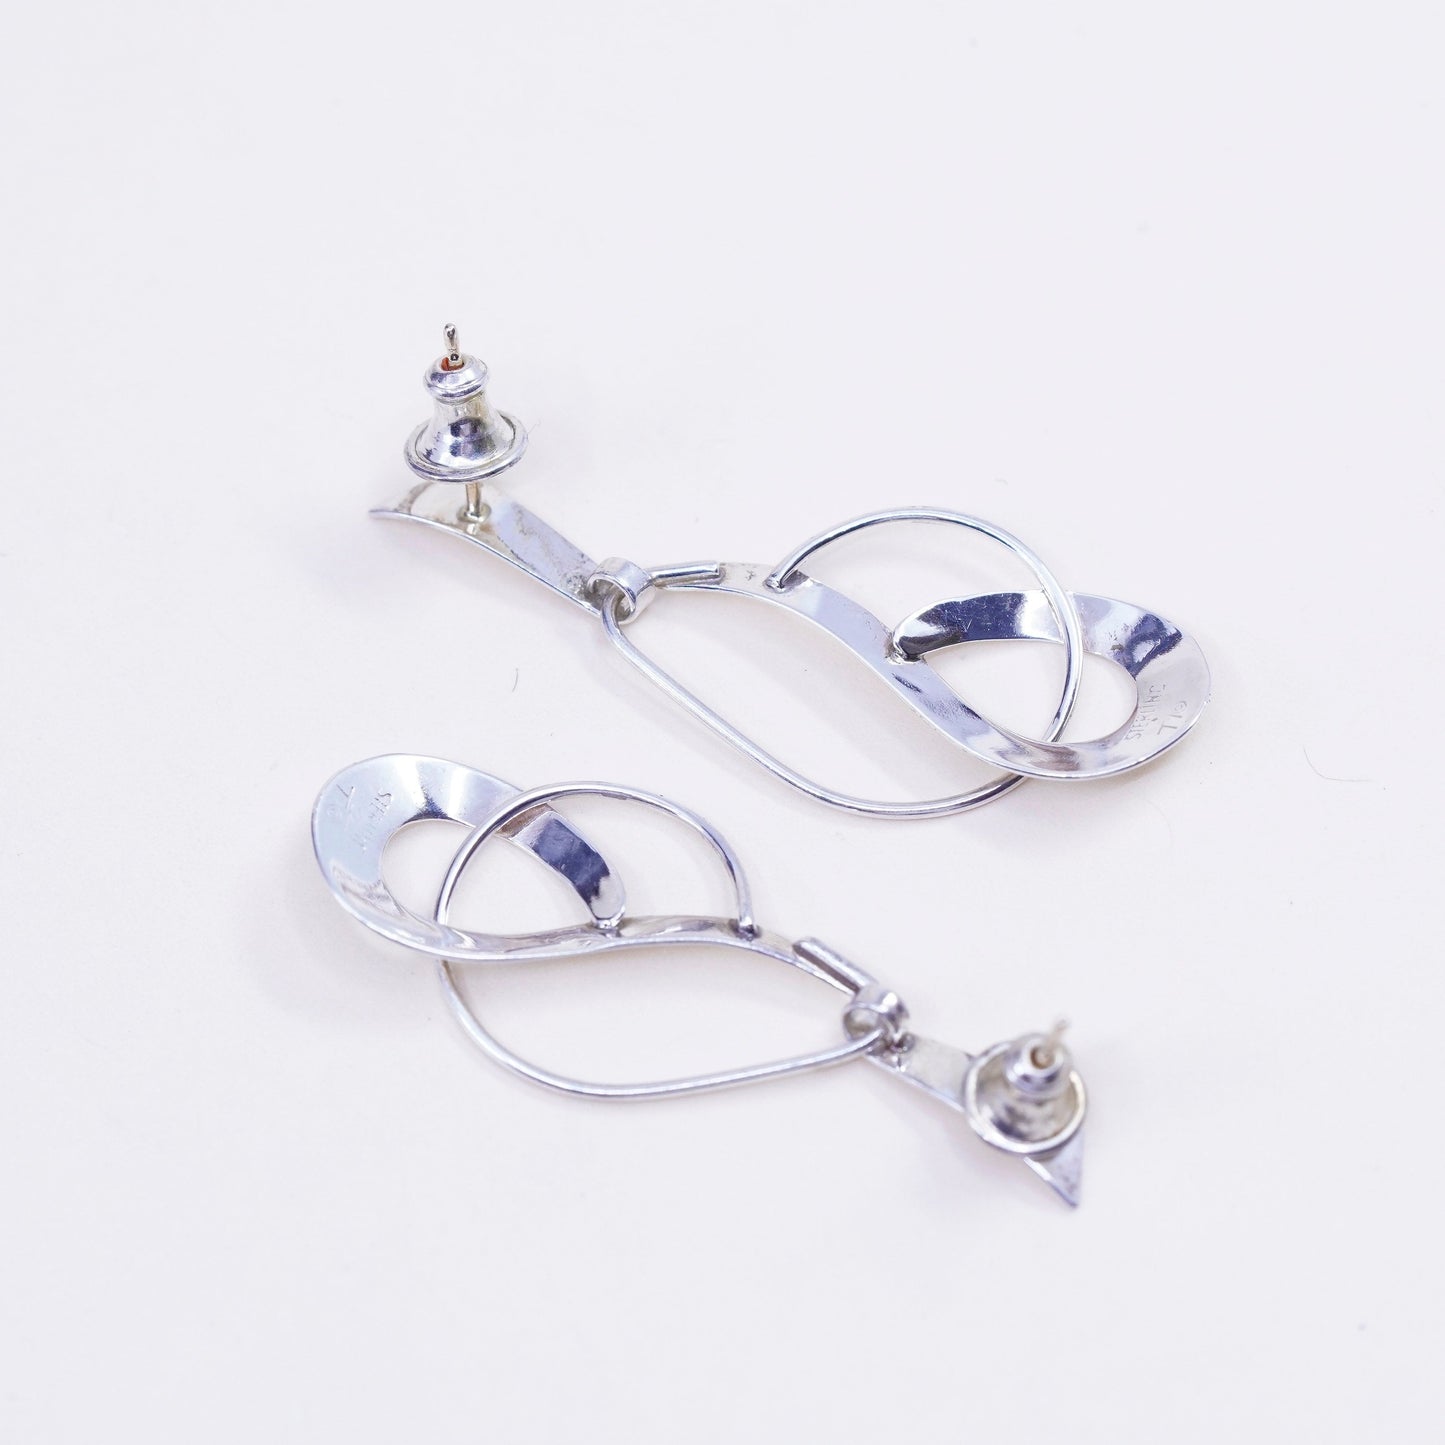 Vintage sterling 925 silver loop earrings, minimalist teardrop 14K gold posts